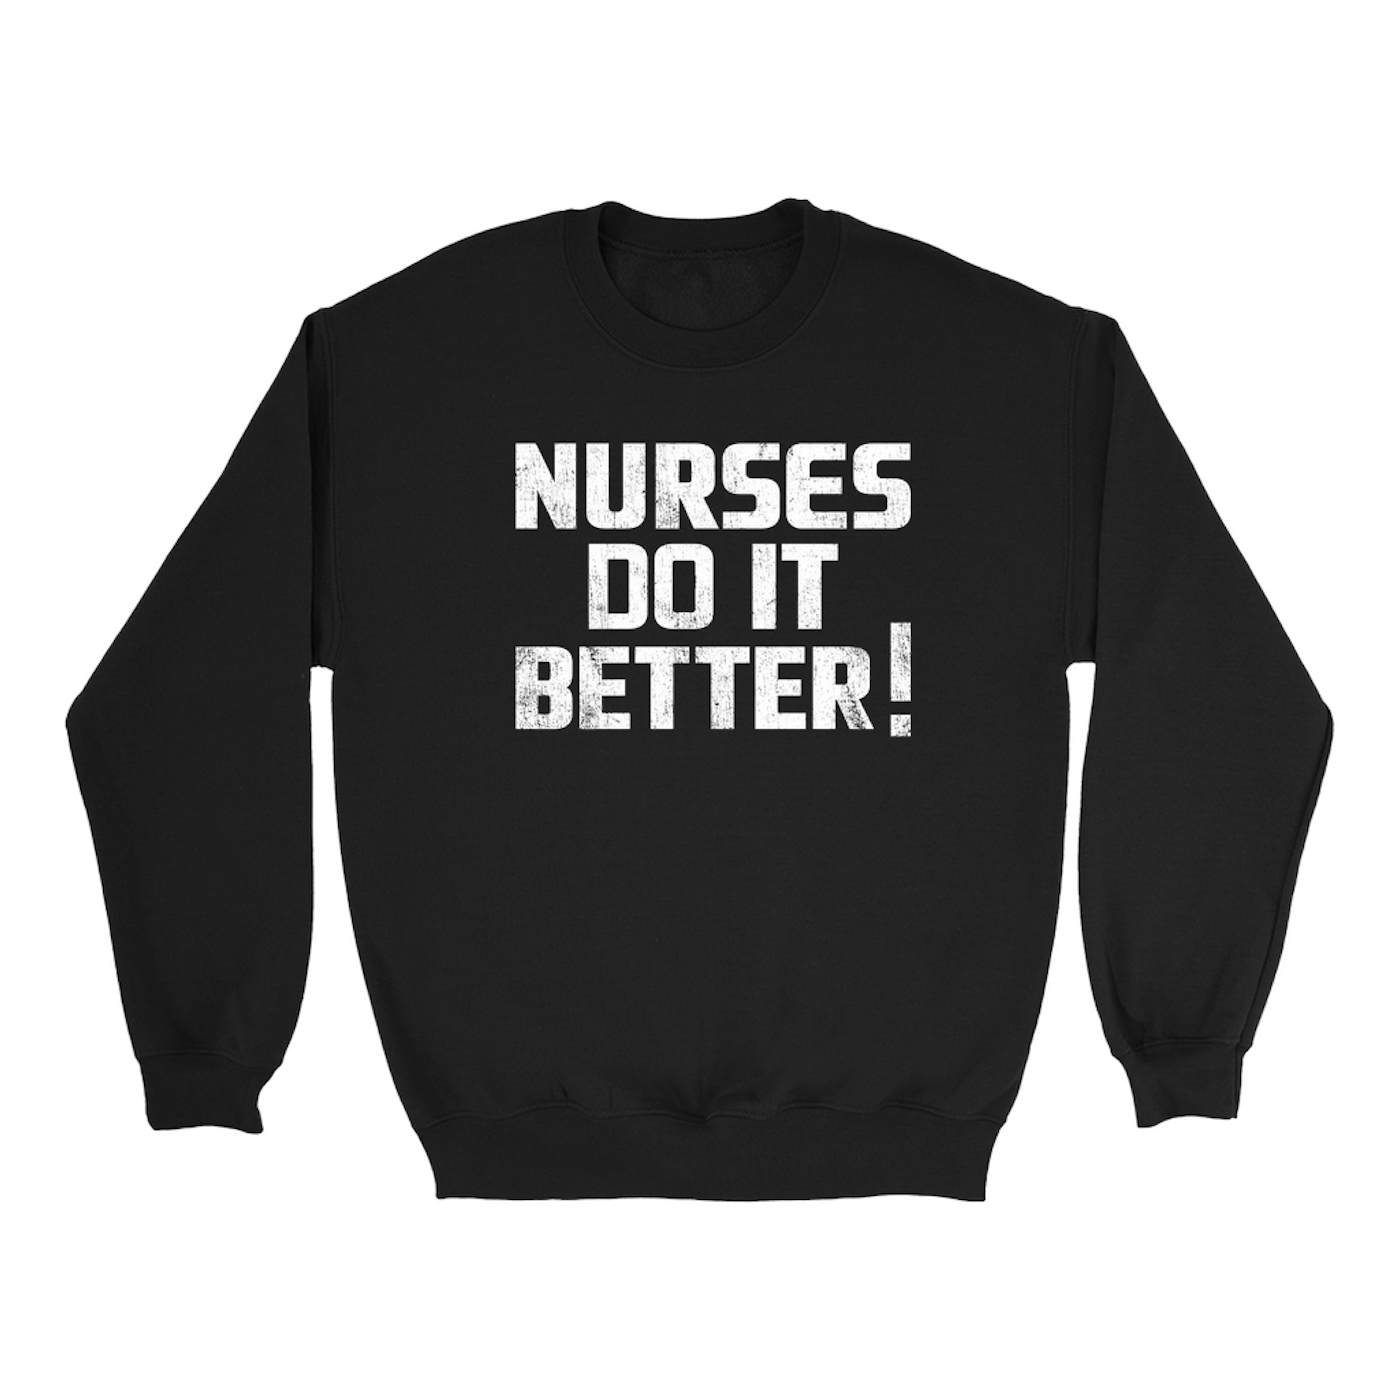 Led Zeppelin Sweatshirt | Nurses Do It Better! Worn By Robert Plant Led Zeppelin Sweatshirt